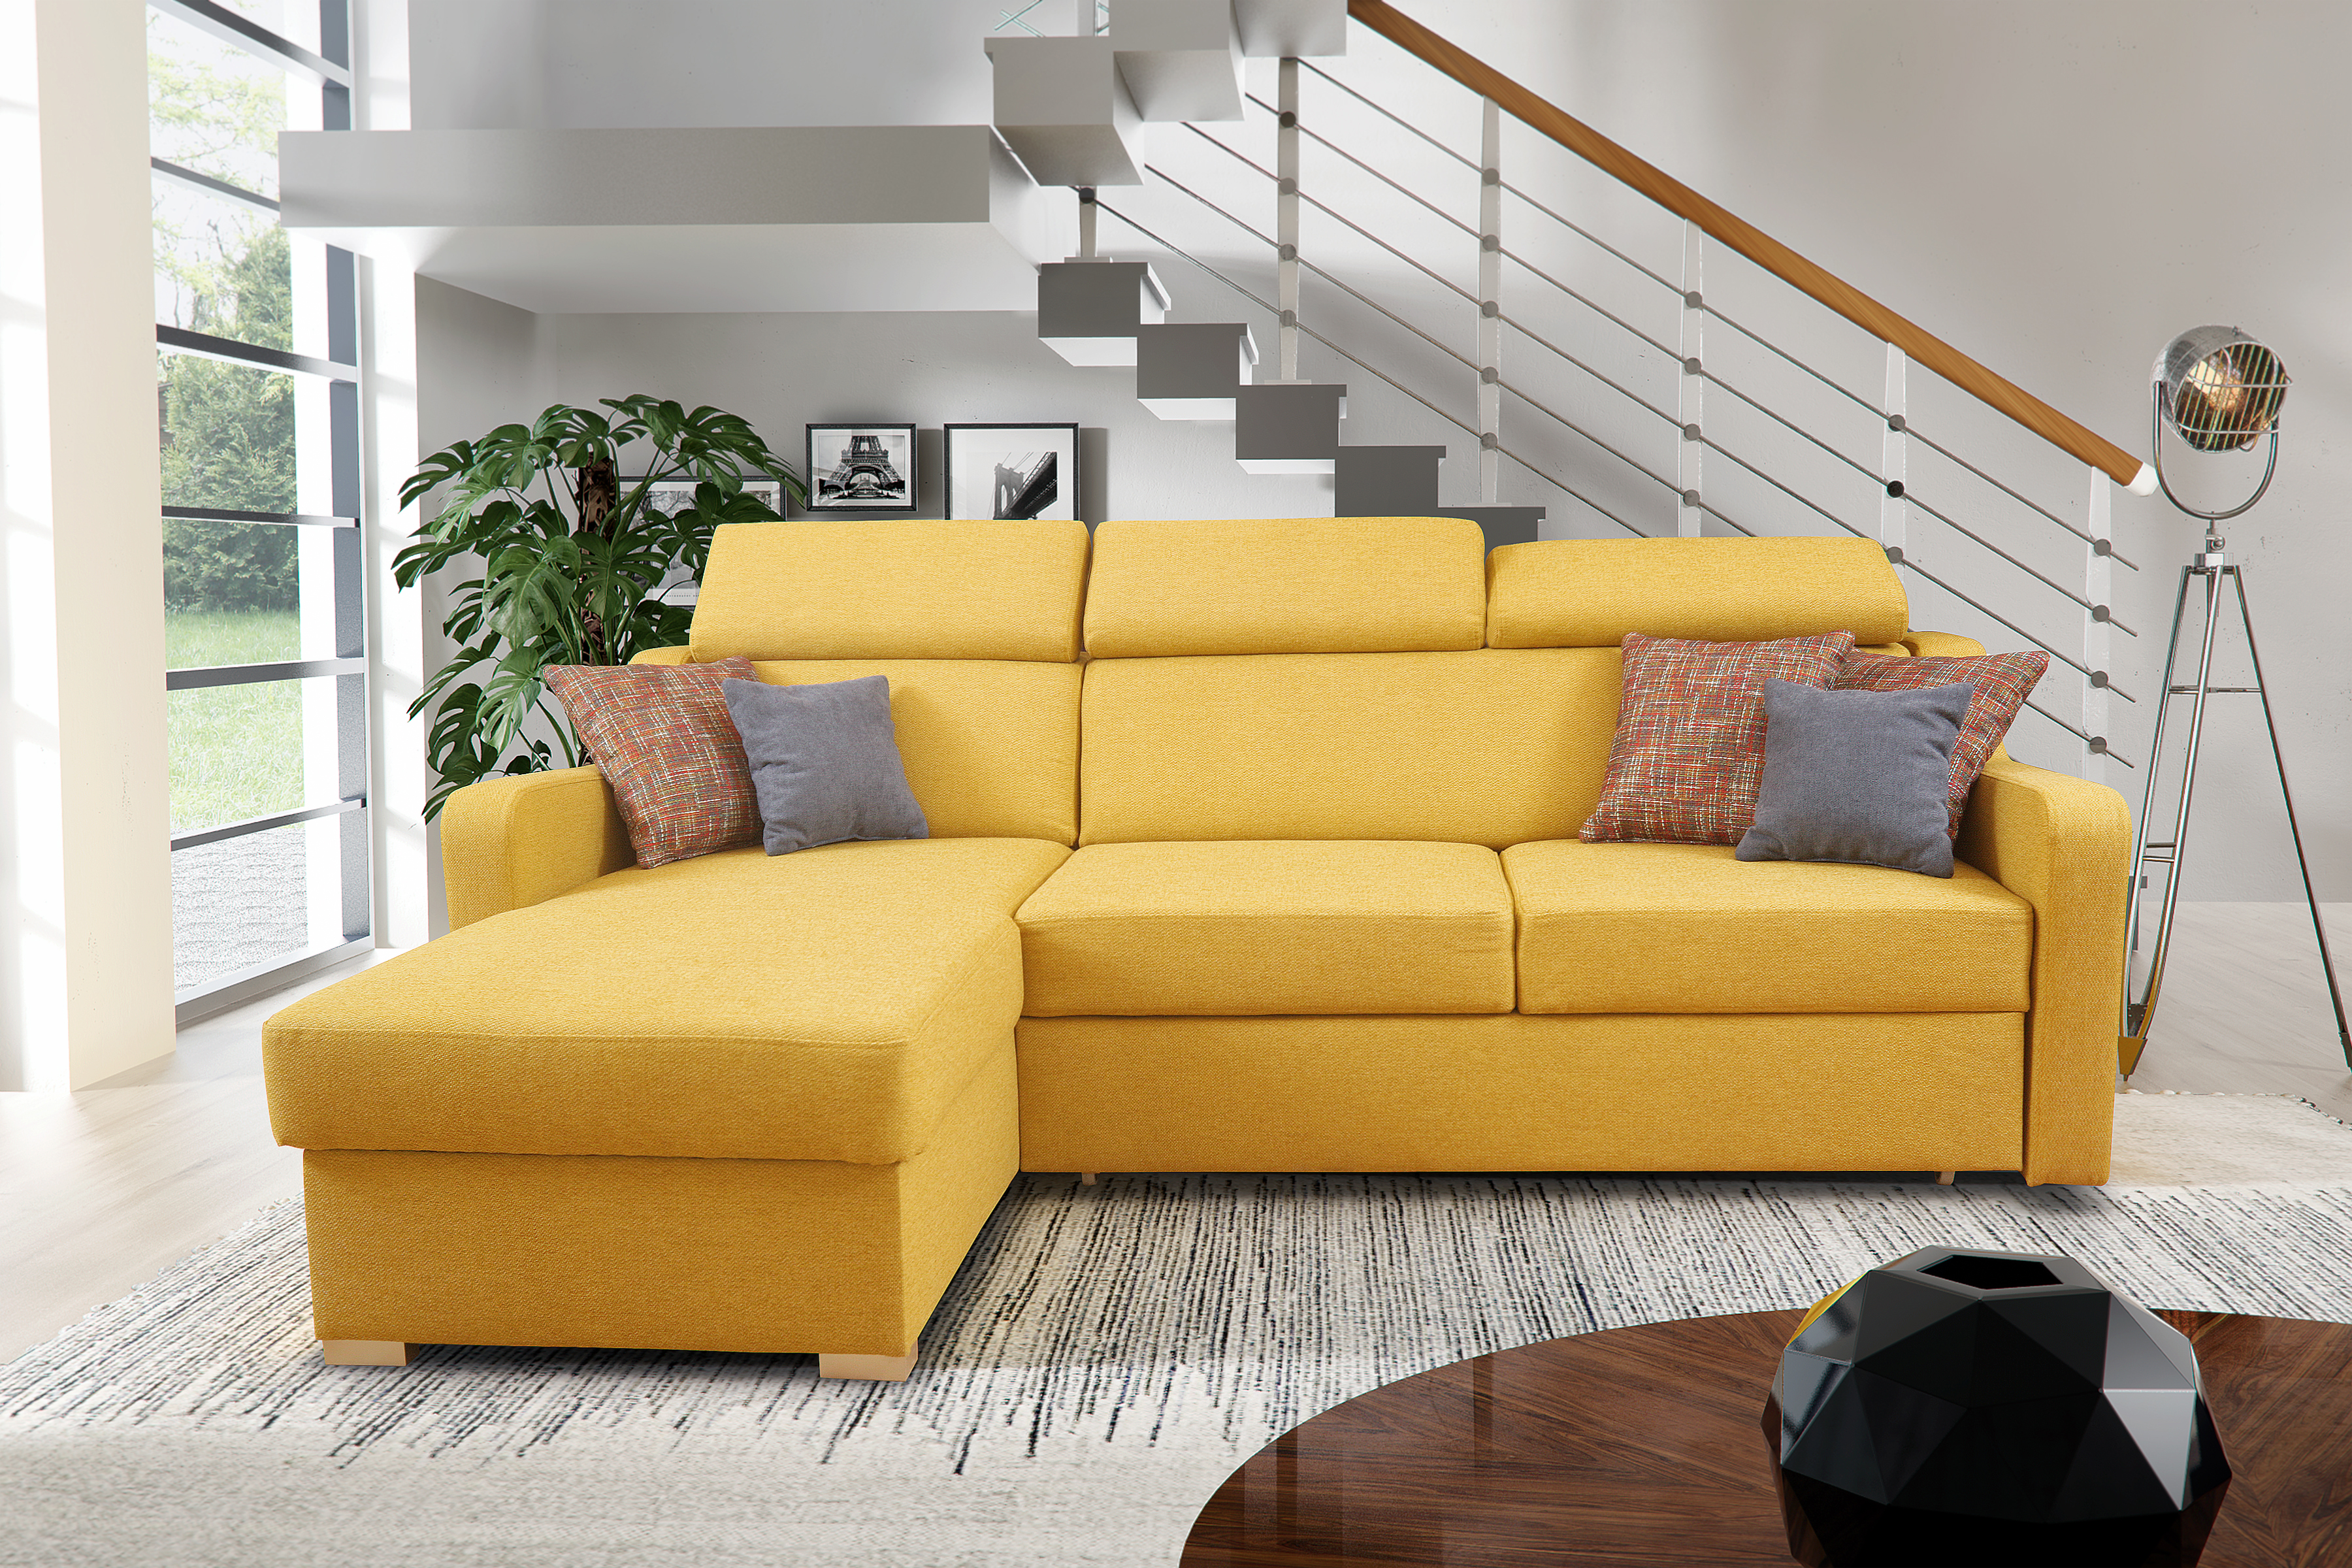 Сами мебель диваны. Диван. Мягкий угловой диван в гостиную. Желтый диван в интерьере. Диван угловой раскладной.